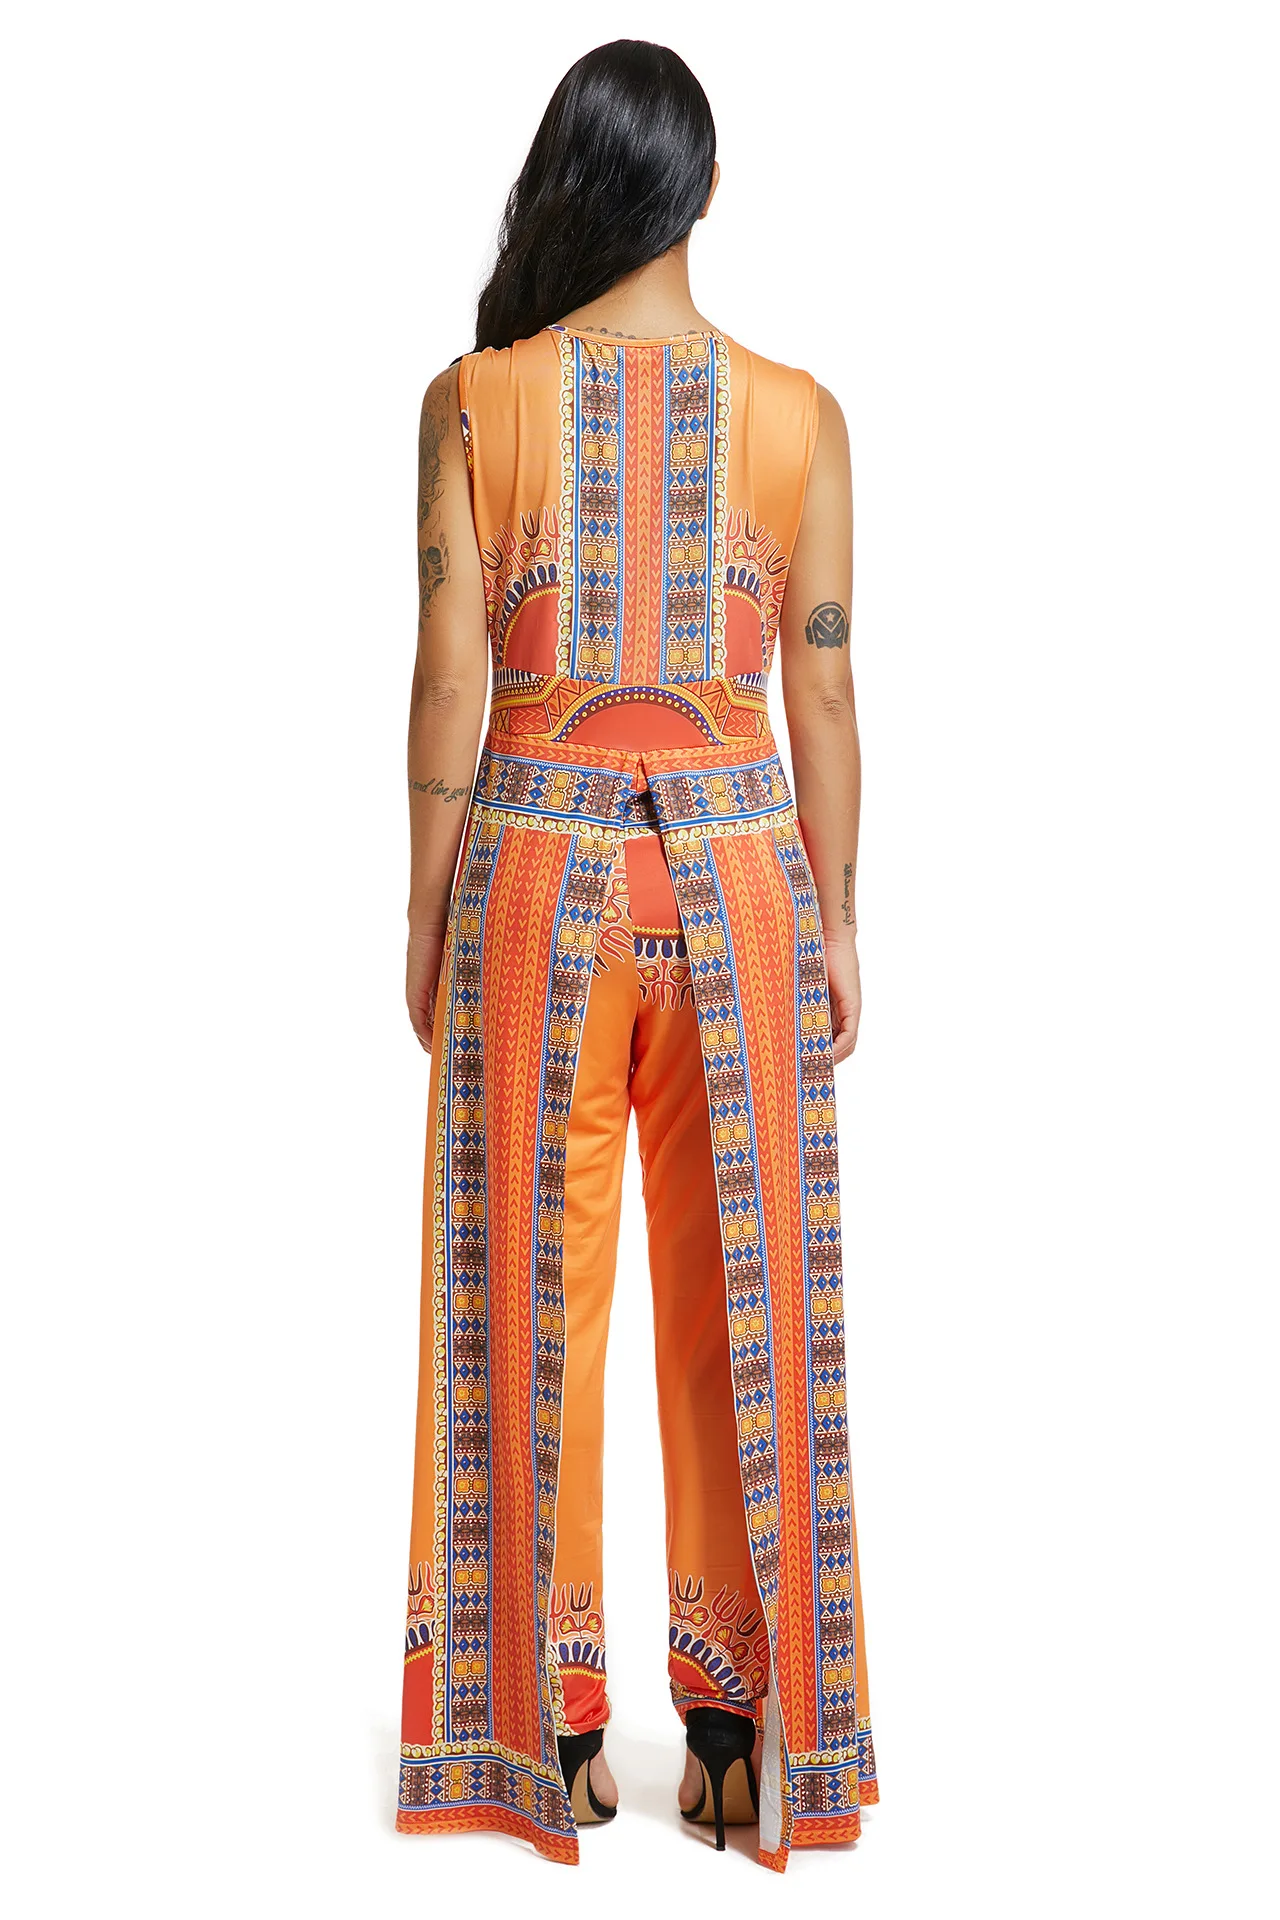 Африканские платья для женщин Взрывные Модели осень позиционирования печати оранжевые штаны в стиле этно